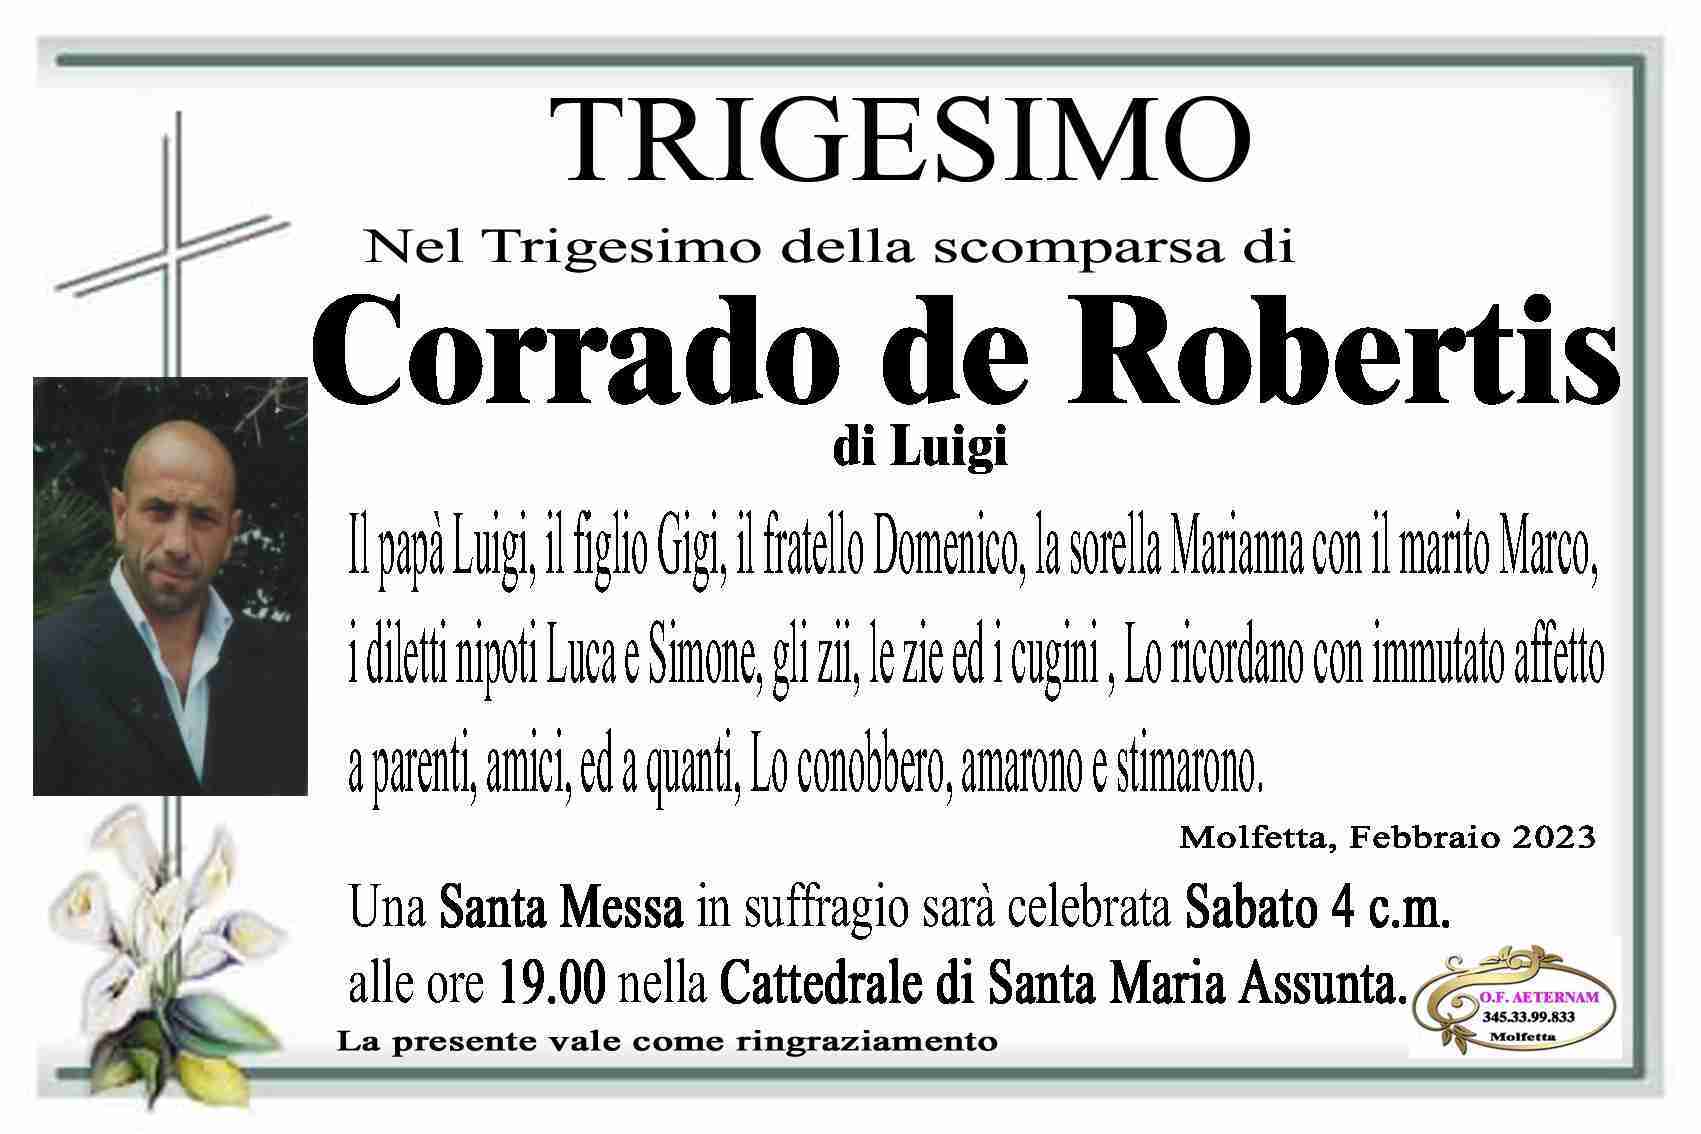 Corrado De Robertis